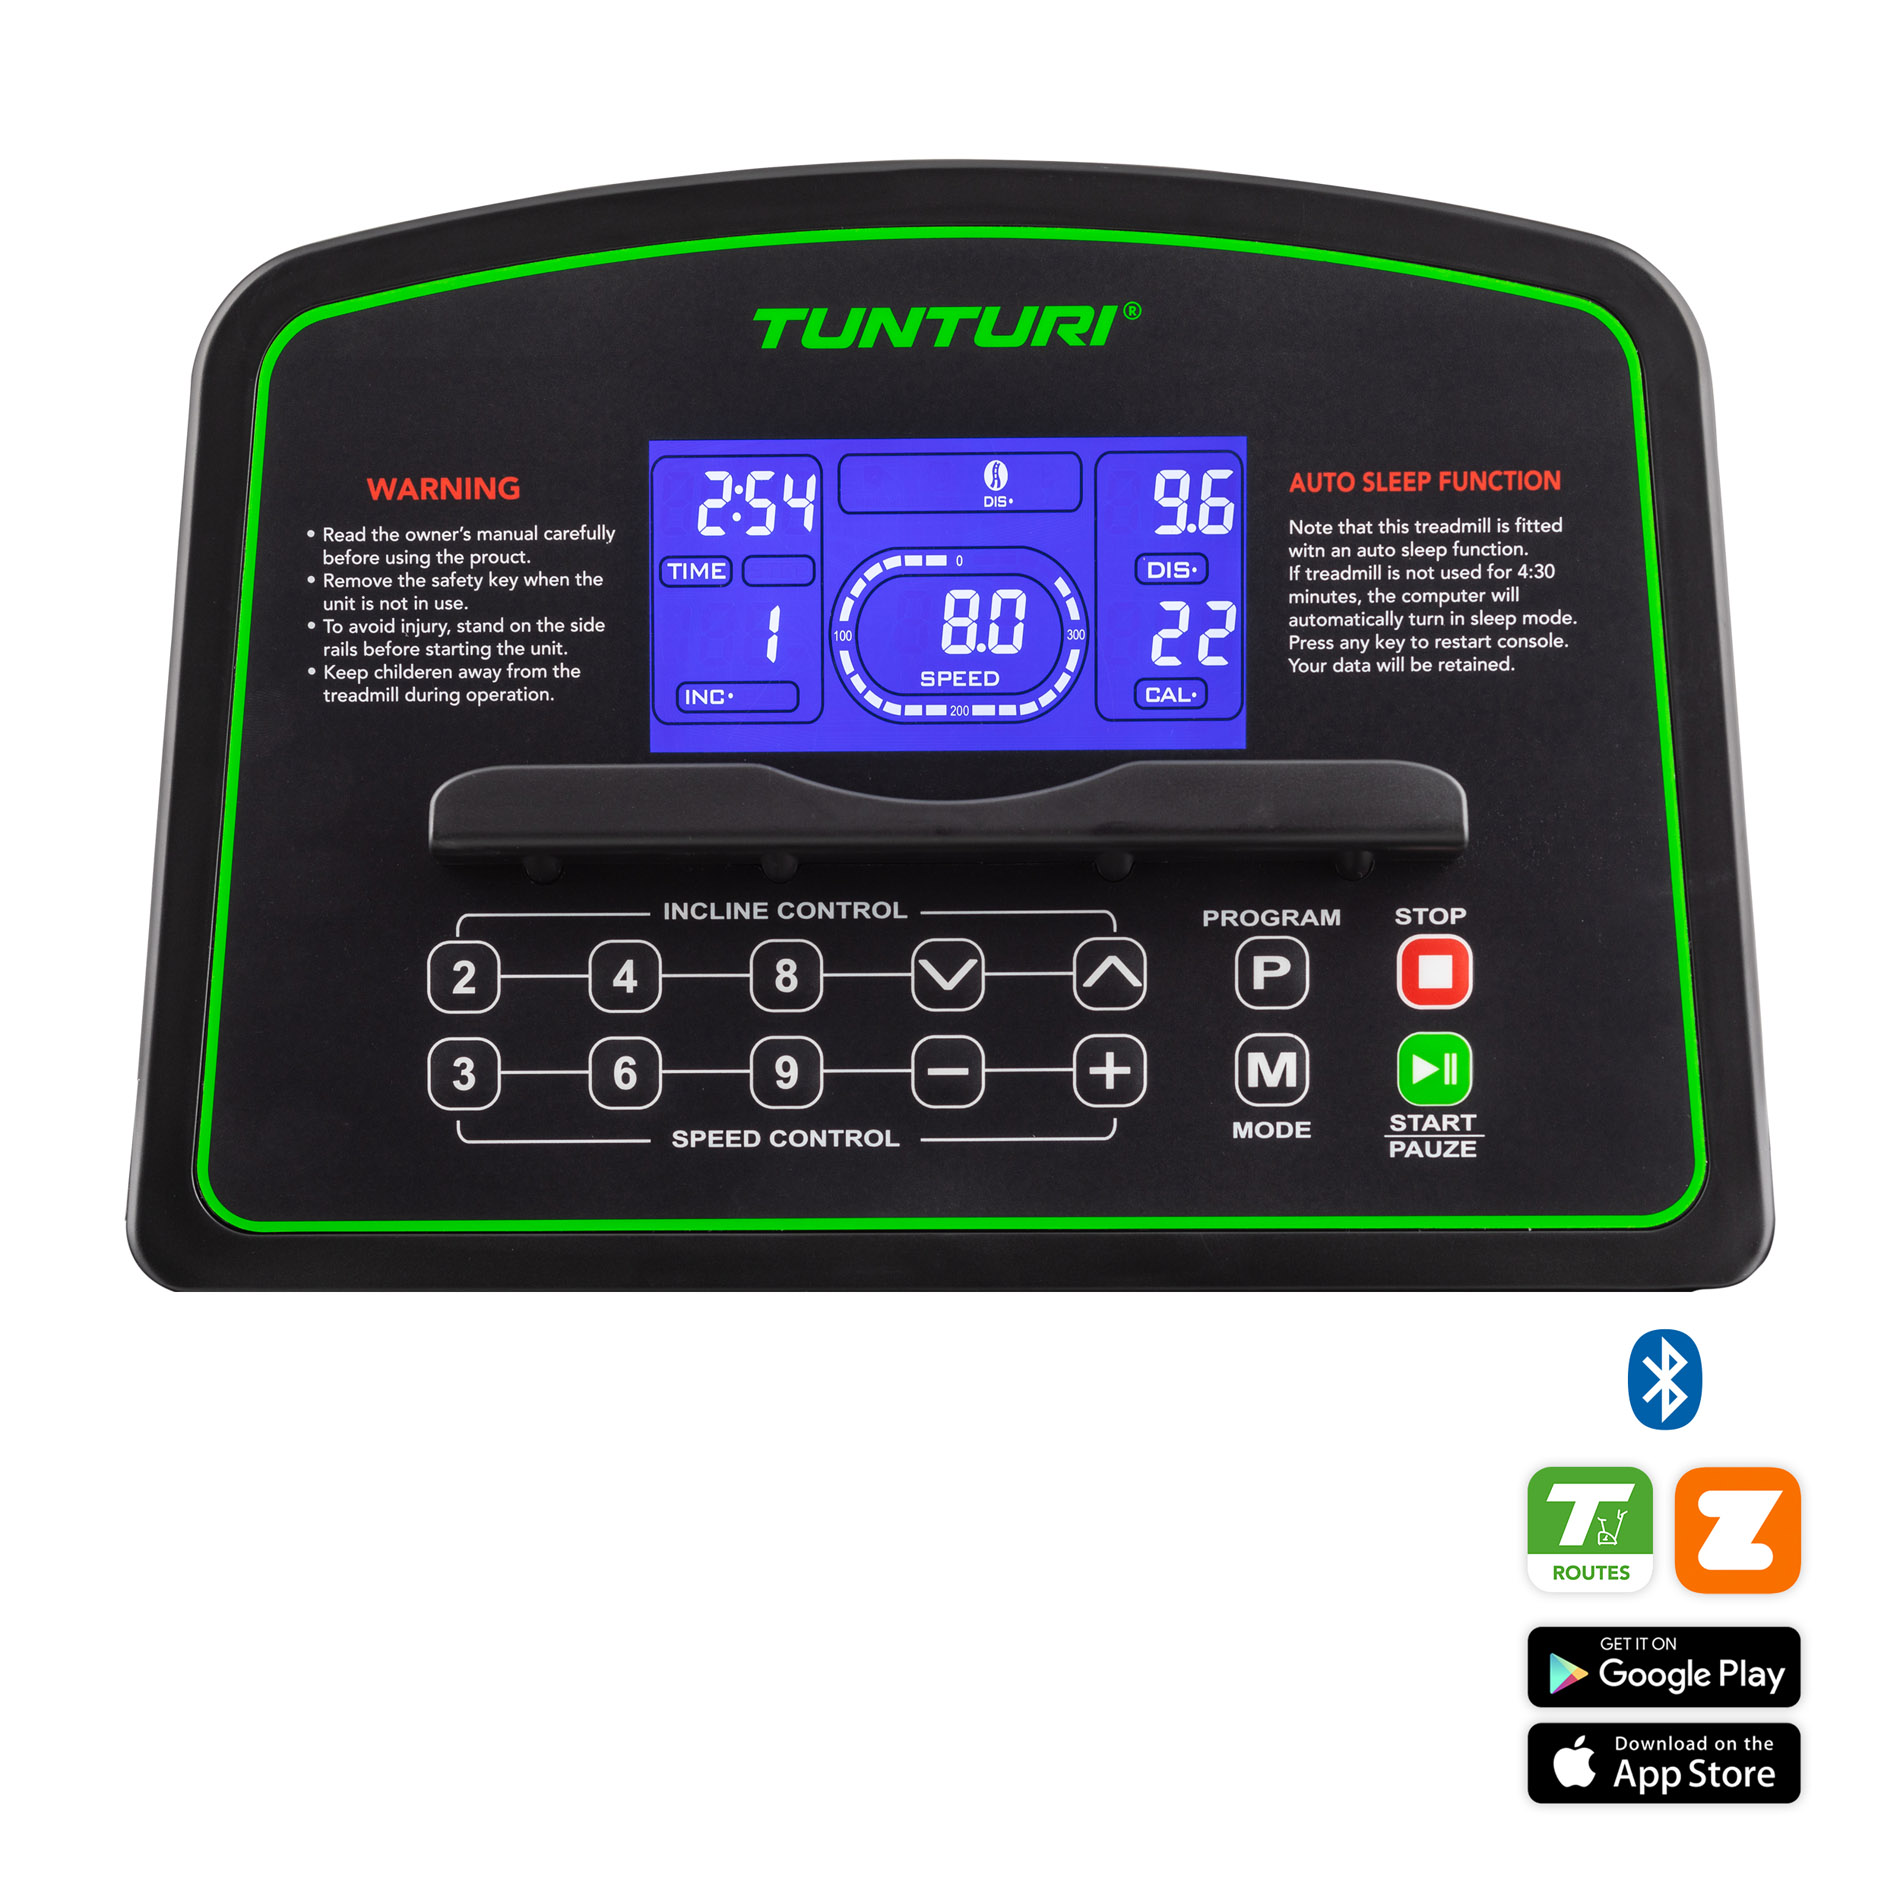 Cardio Fit T40 Treadmill